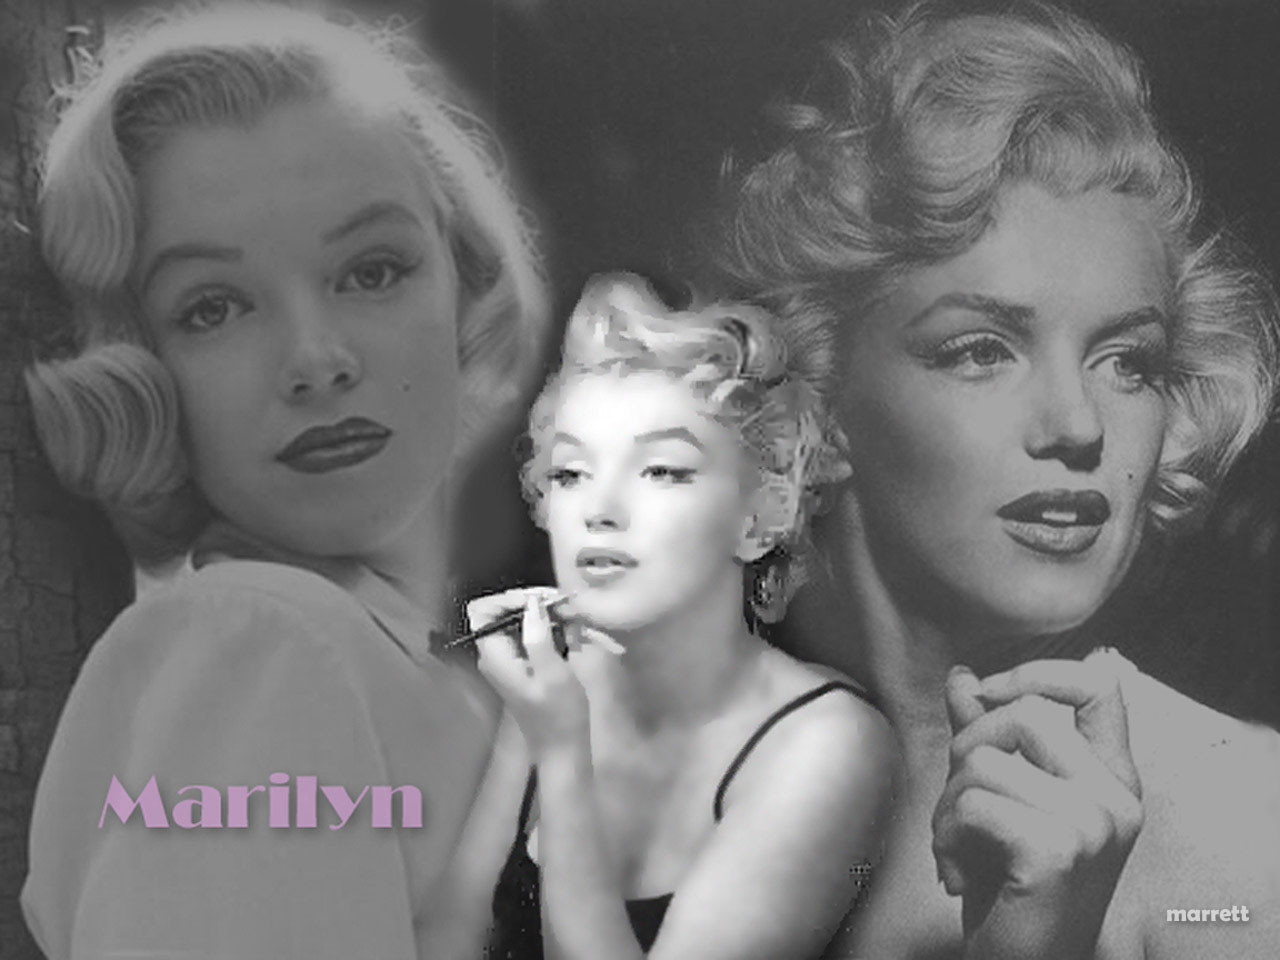 http://1.bp.blogspot.com/_YiHS5Vas61Y/SoRLw1sLAWI/AAAAAAAAKKw/EbaQ1LUS1cg/s1600/Marilyn-Monroe-wallpaper-1280.jpg